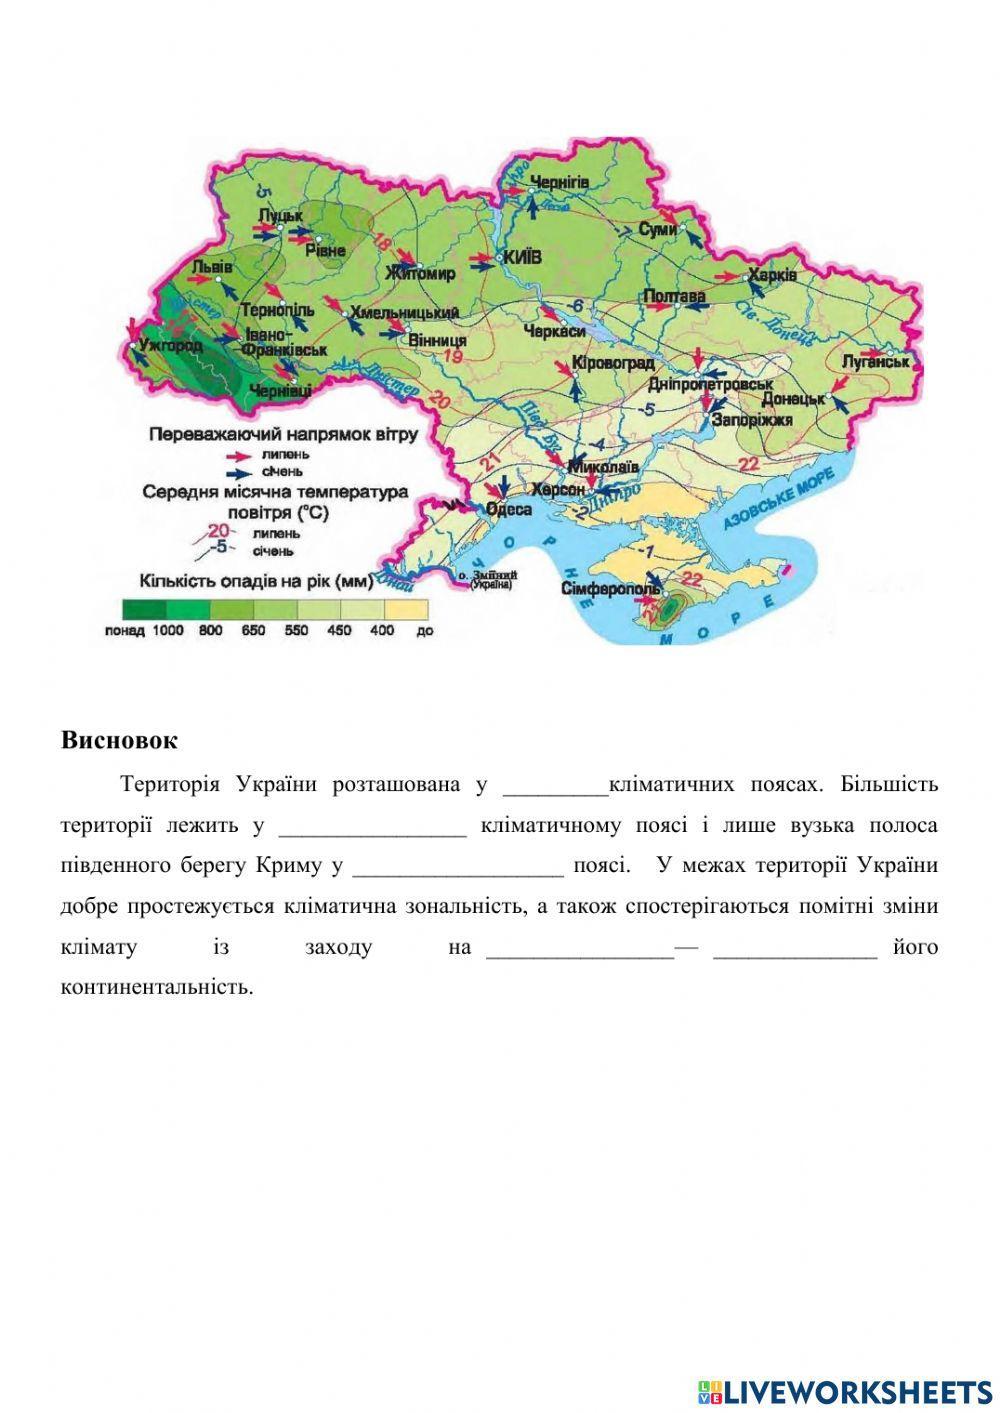 Практична робота №6 Встановлення особливостей клімату різних регіонів України за аналізом карт та кліматичних діаграм.